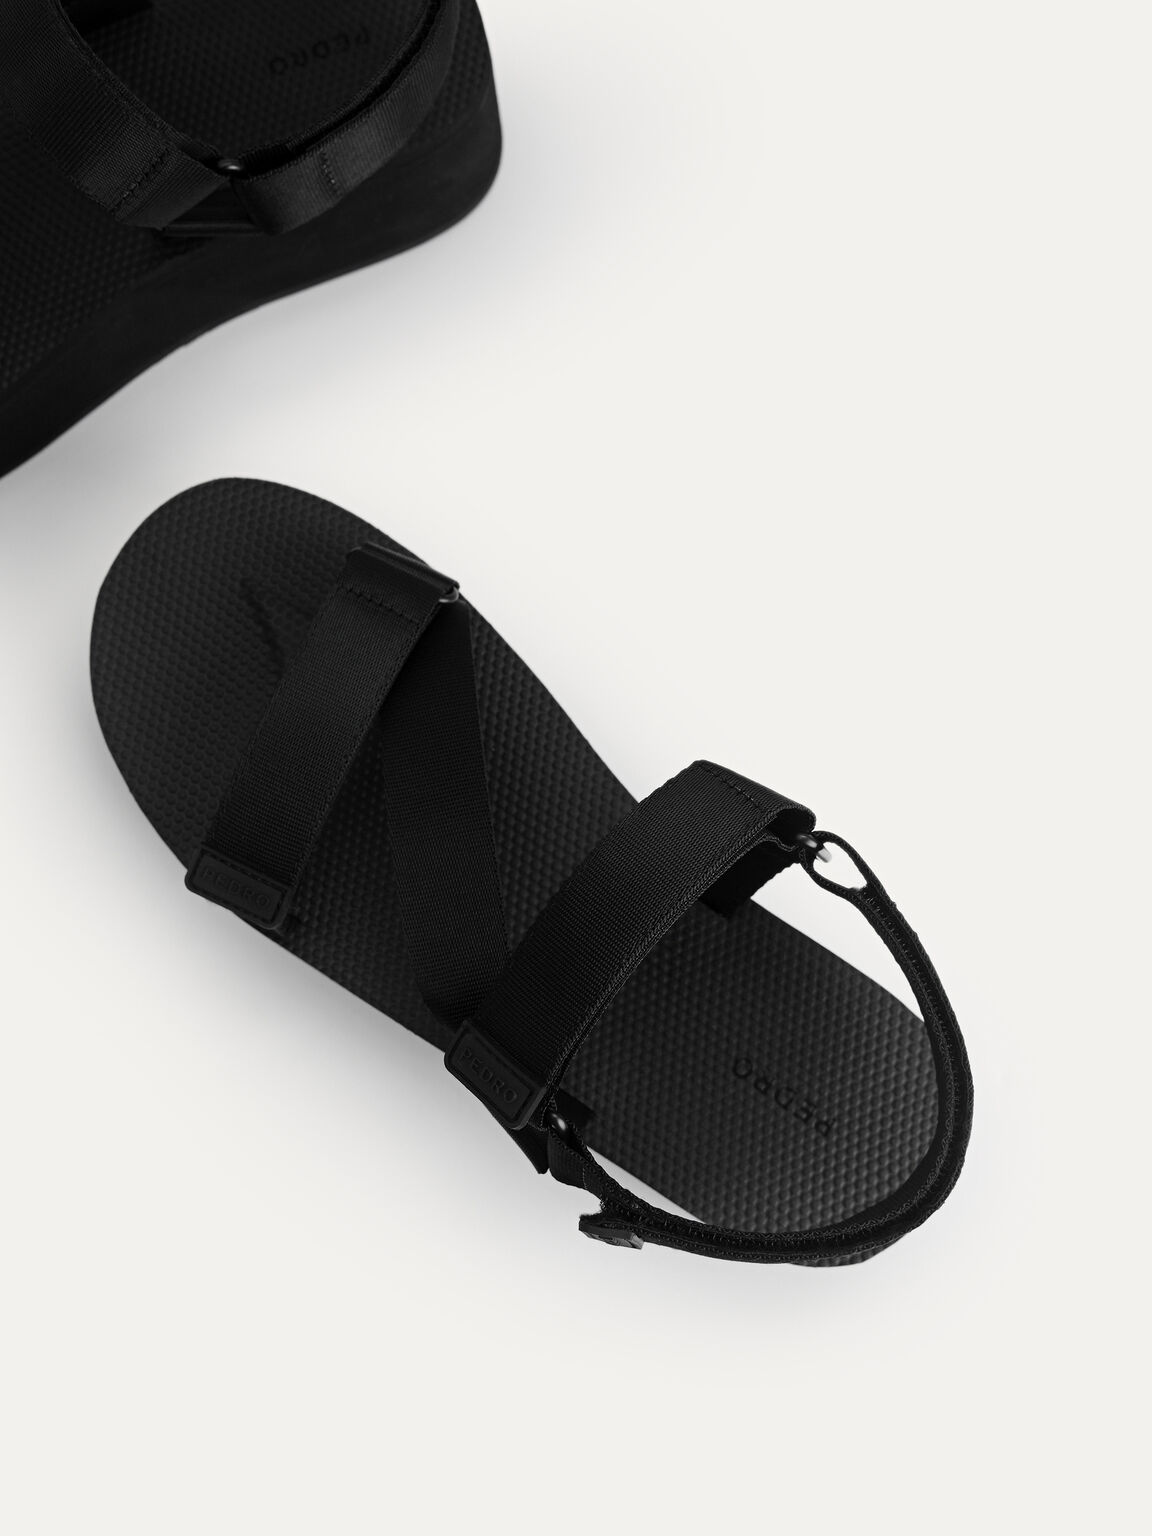 Flatform Sandals, Black